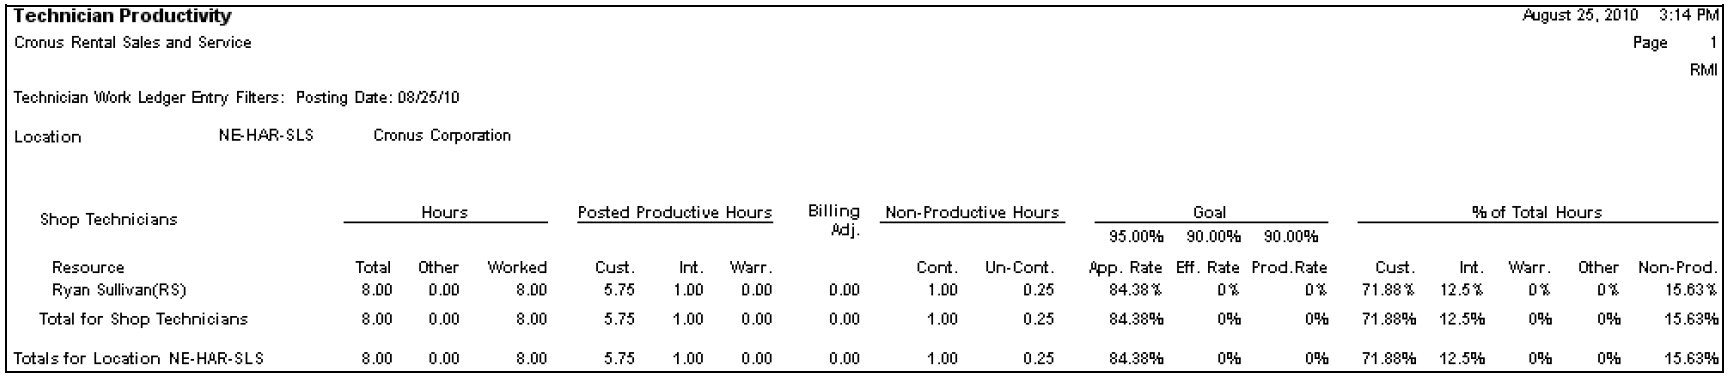 Technician Productivity scorecard